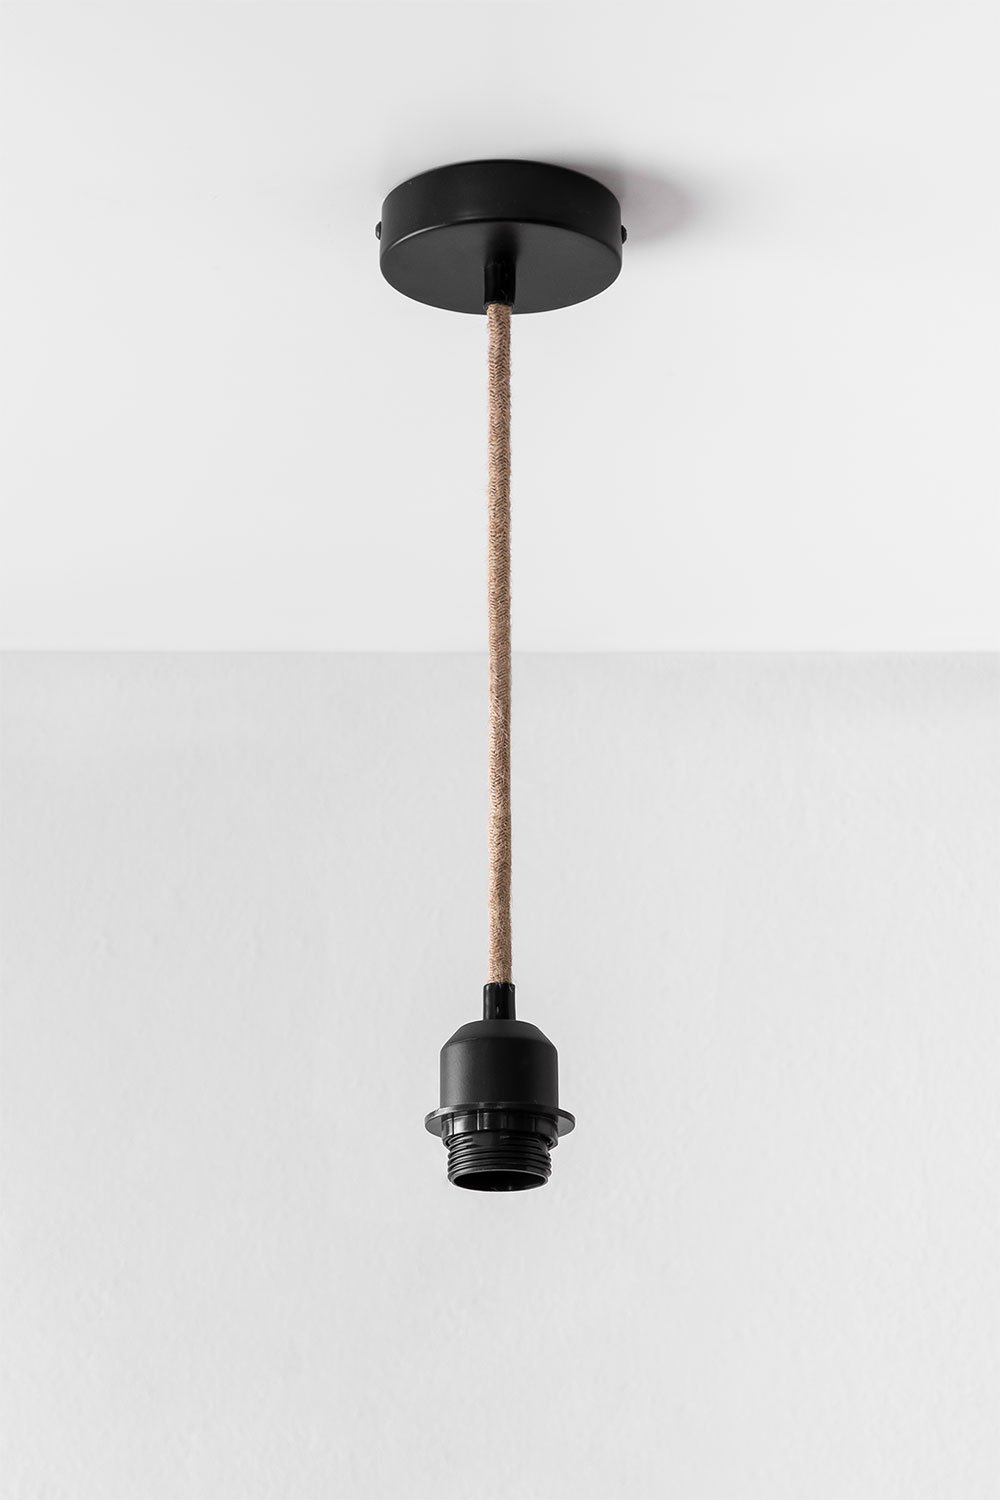 Snoer voor Plafondlamp Coyle , galerij beeld 1